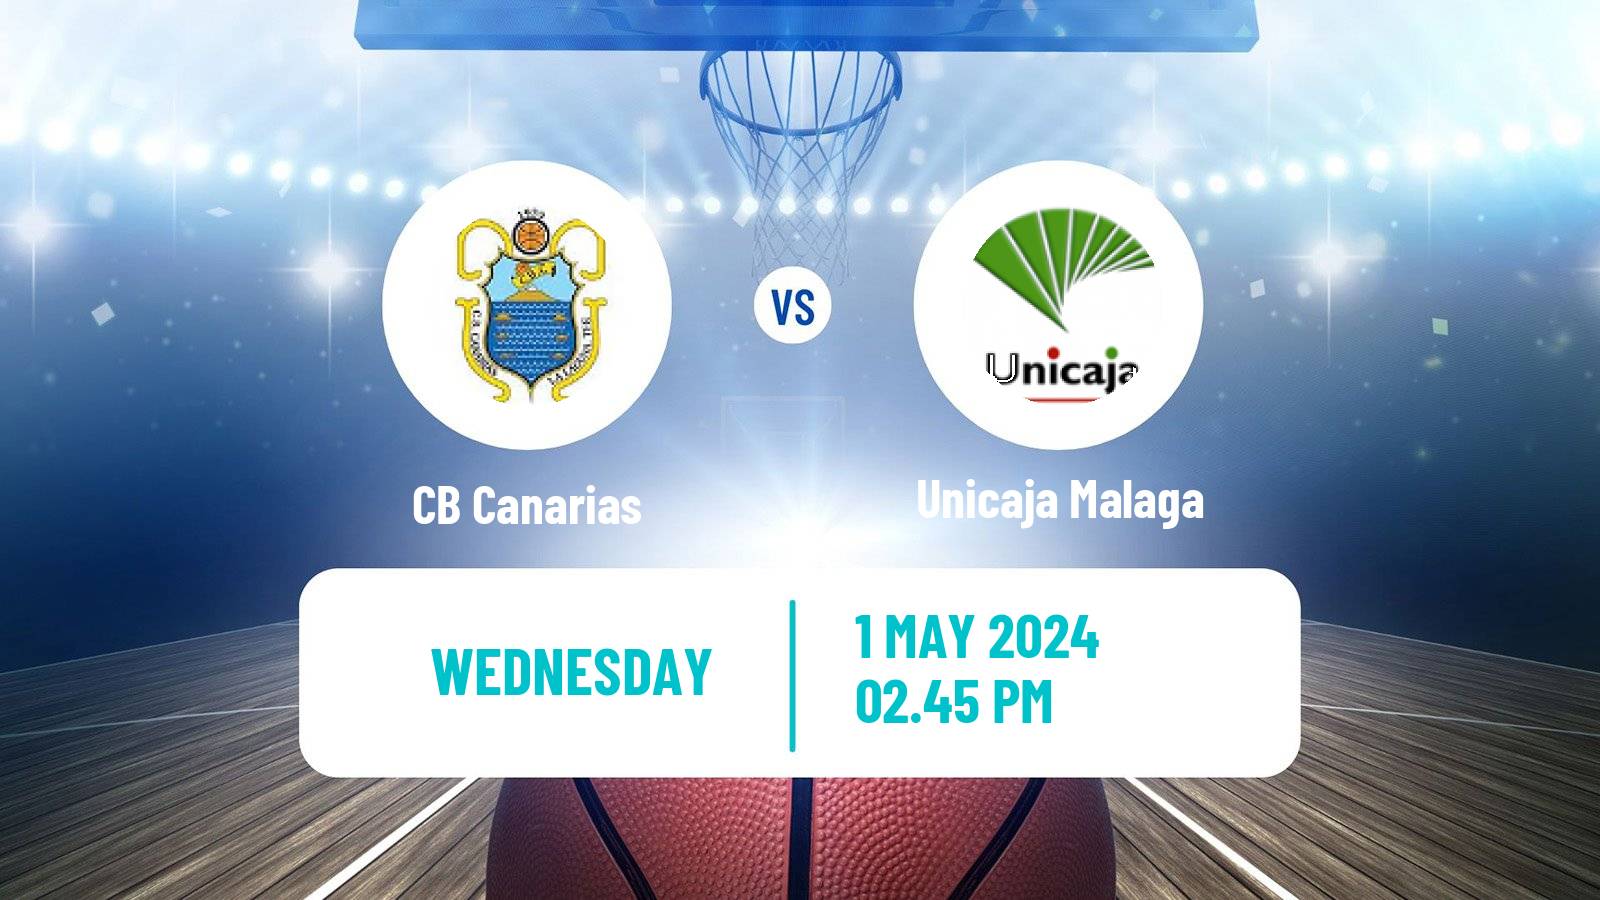 Basketball Spanish ACB League Canarias - Unicaja Malaga